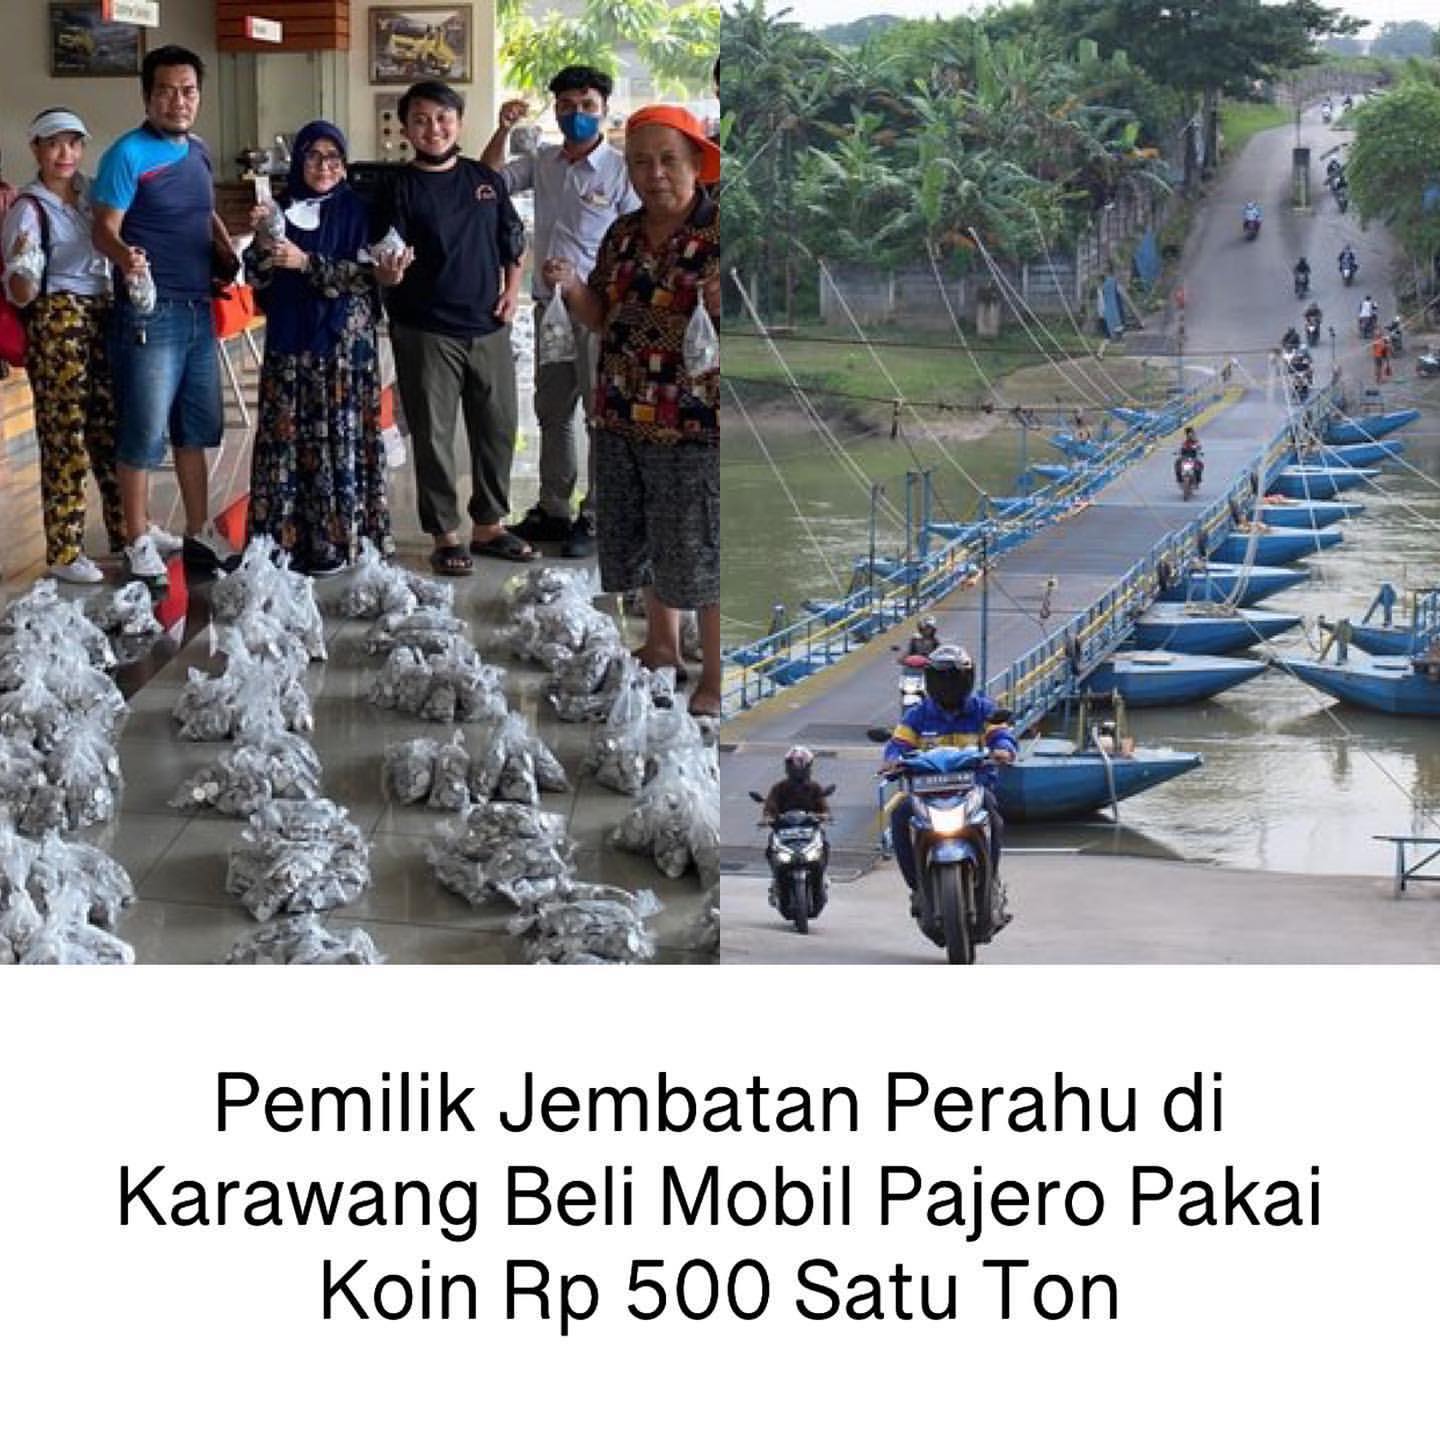 Pemilik Jembatan Perahu di Karawang Beli Mobil Pajero Pakai Koin Rp.500 Satu Ton